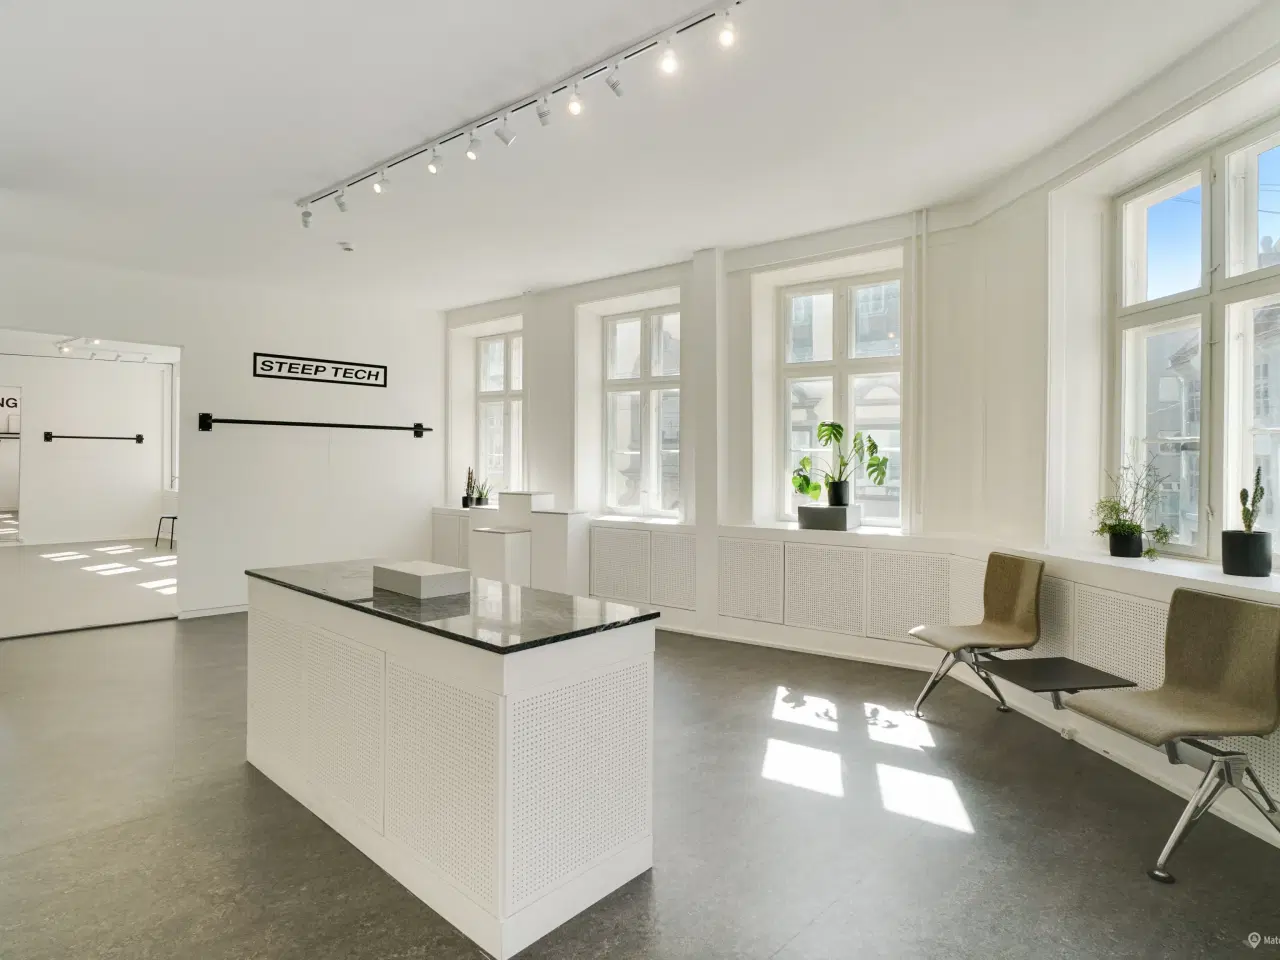 Billede 3 - Kontor eller showroom i Københavns charmerende Latinerkvarter